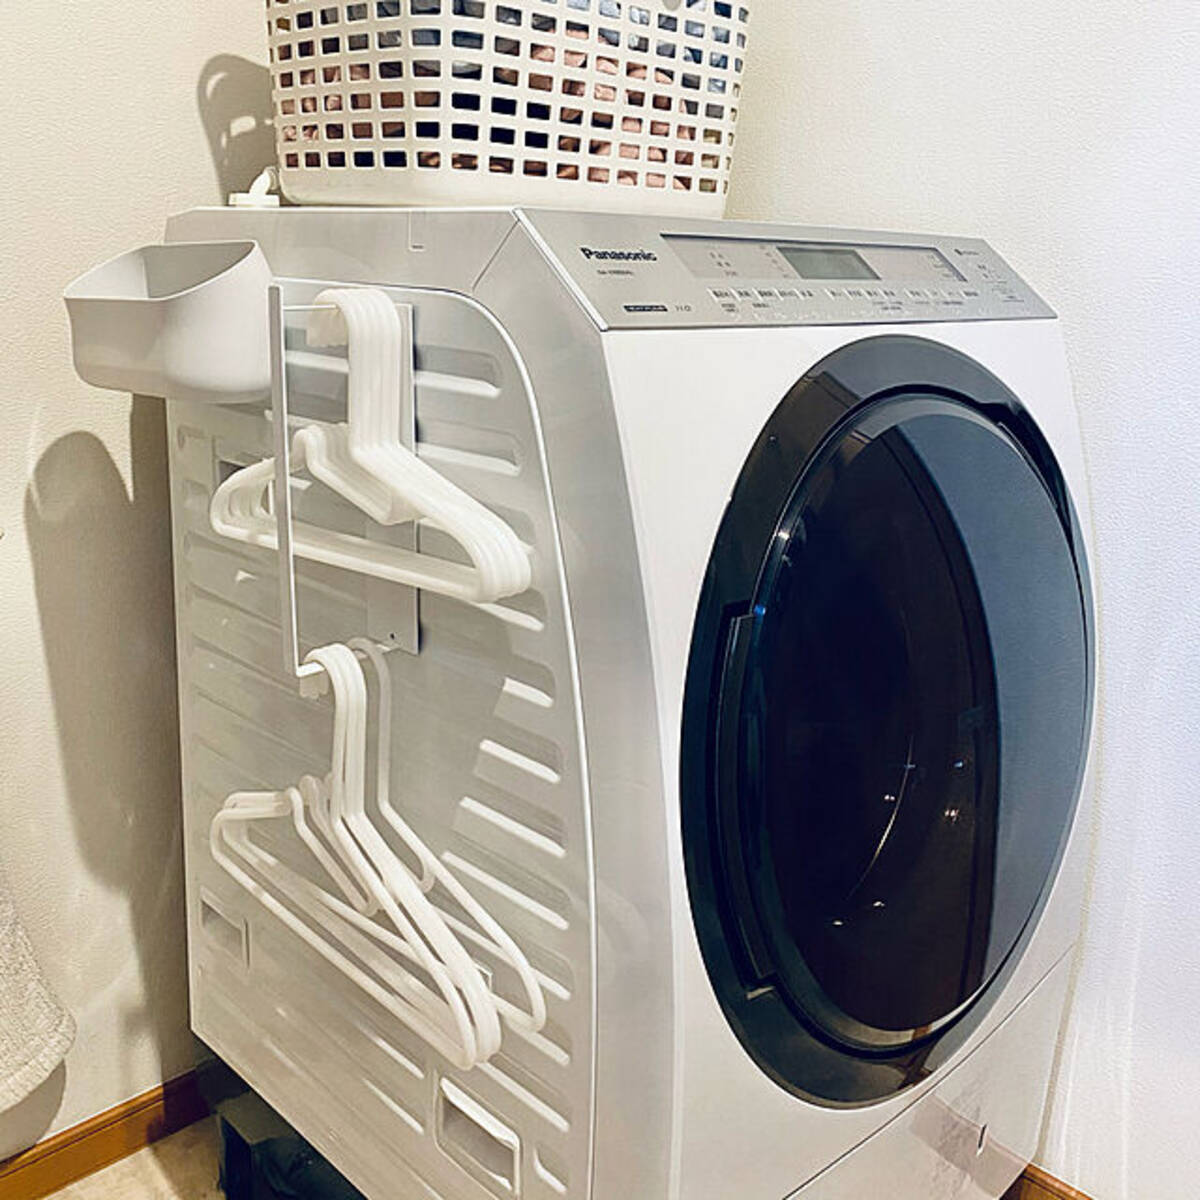 便利で省スペース 洗濯機に取り付けて使える マグネットアイテム10選 21年8月2日 エキサイトニュース 2 3